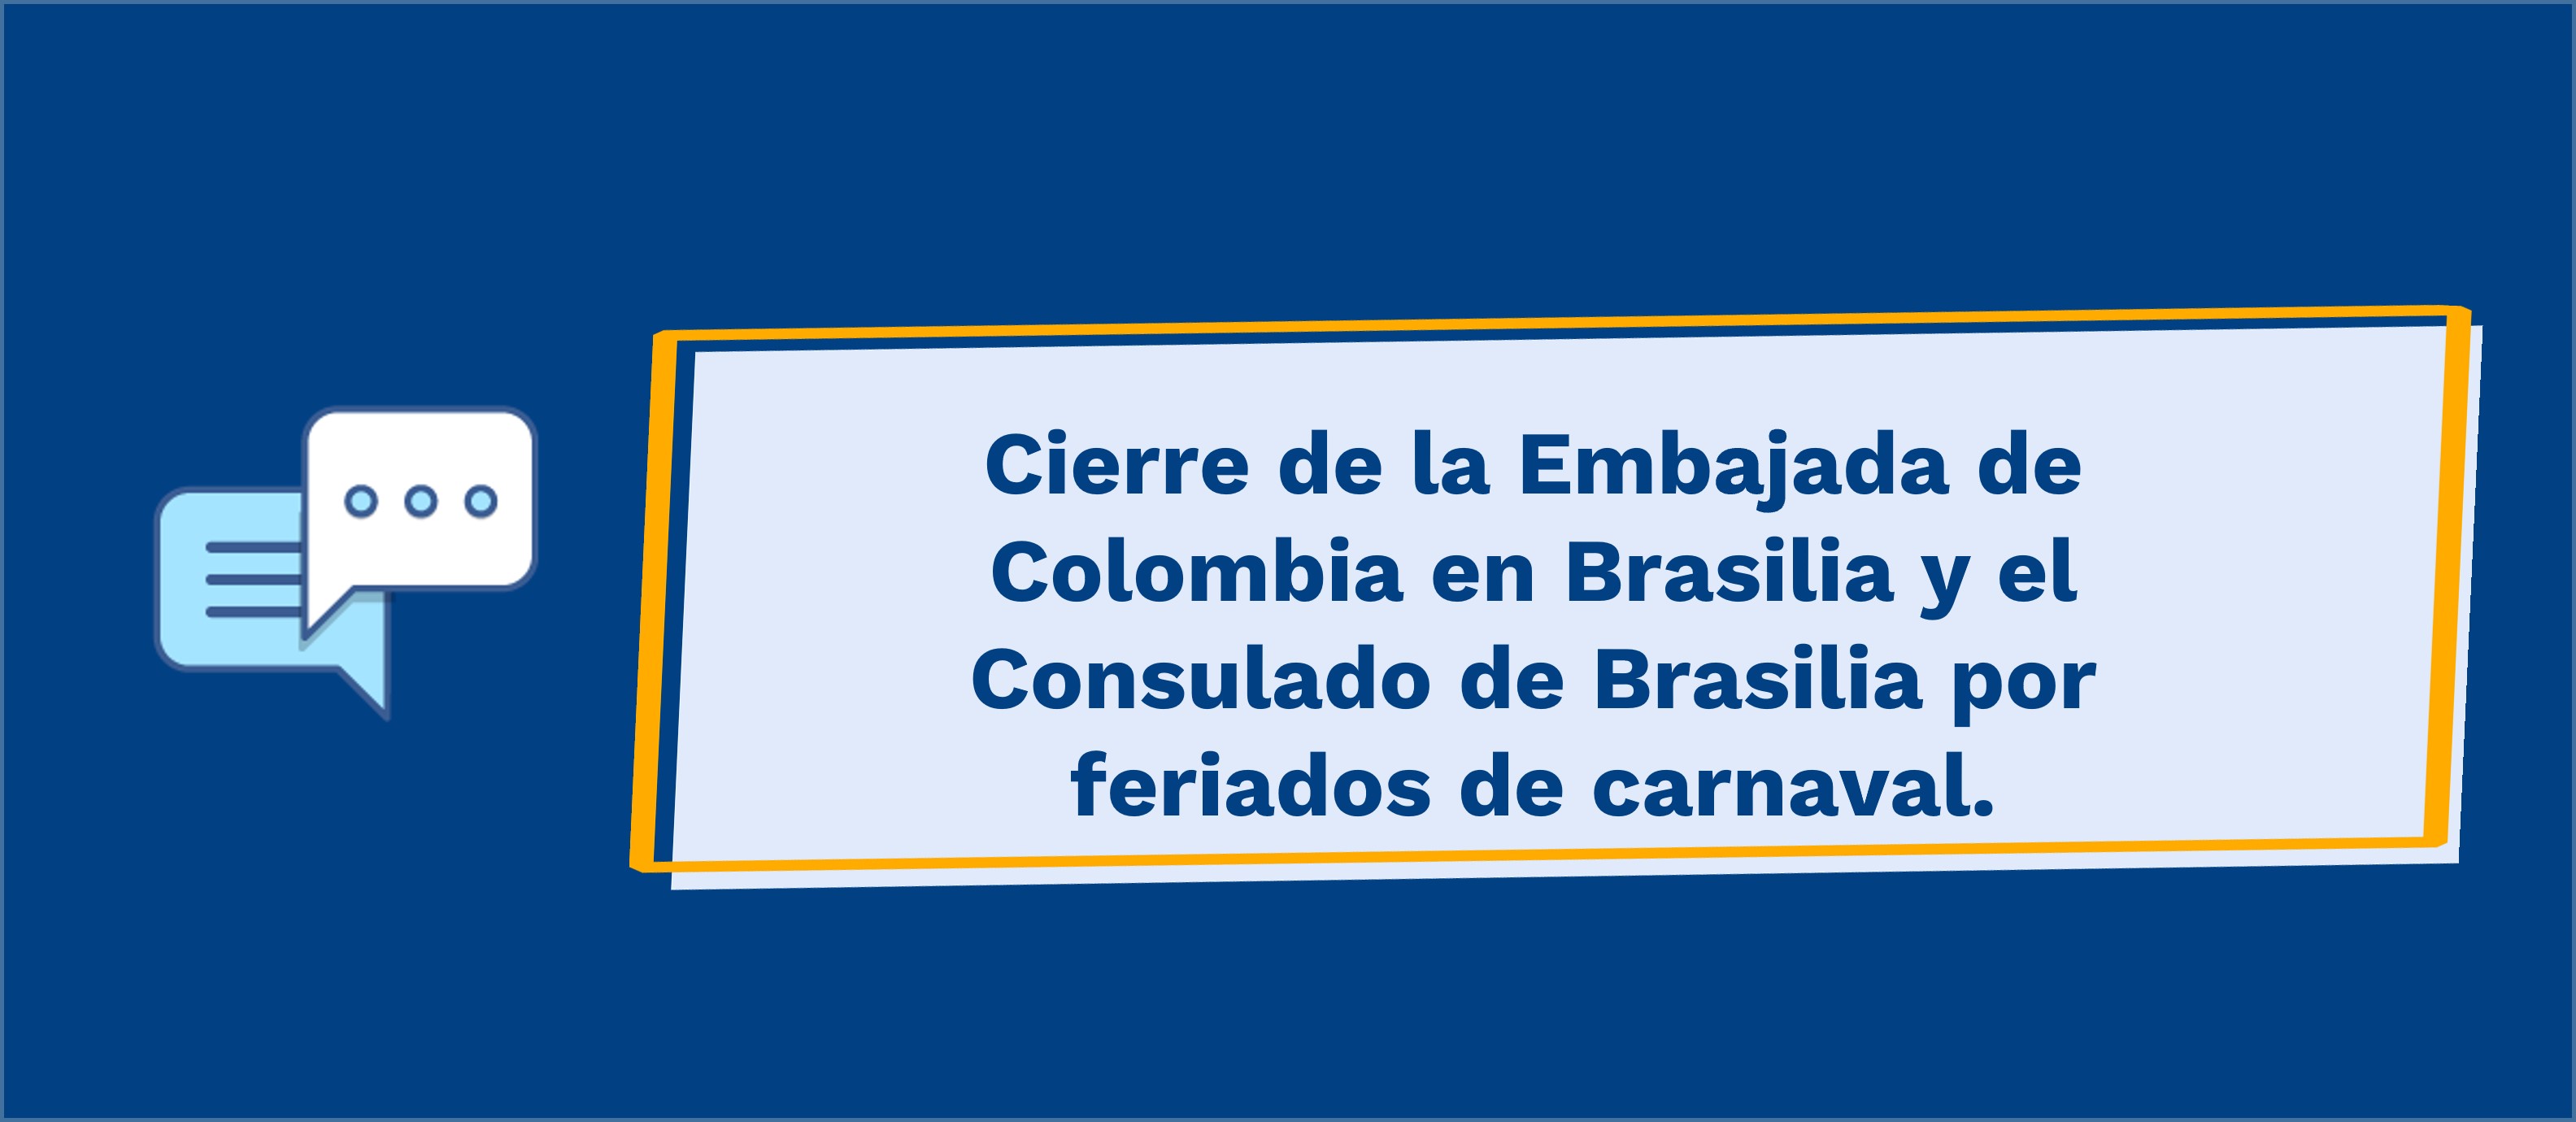 Cierre de la Embajada de Colombia en Brasilia y el Consulado de Brasilia por feriados de carnaval.